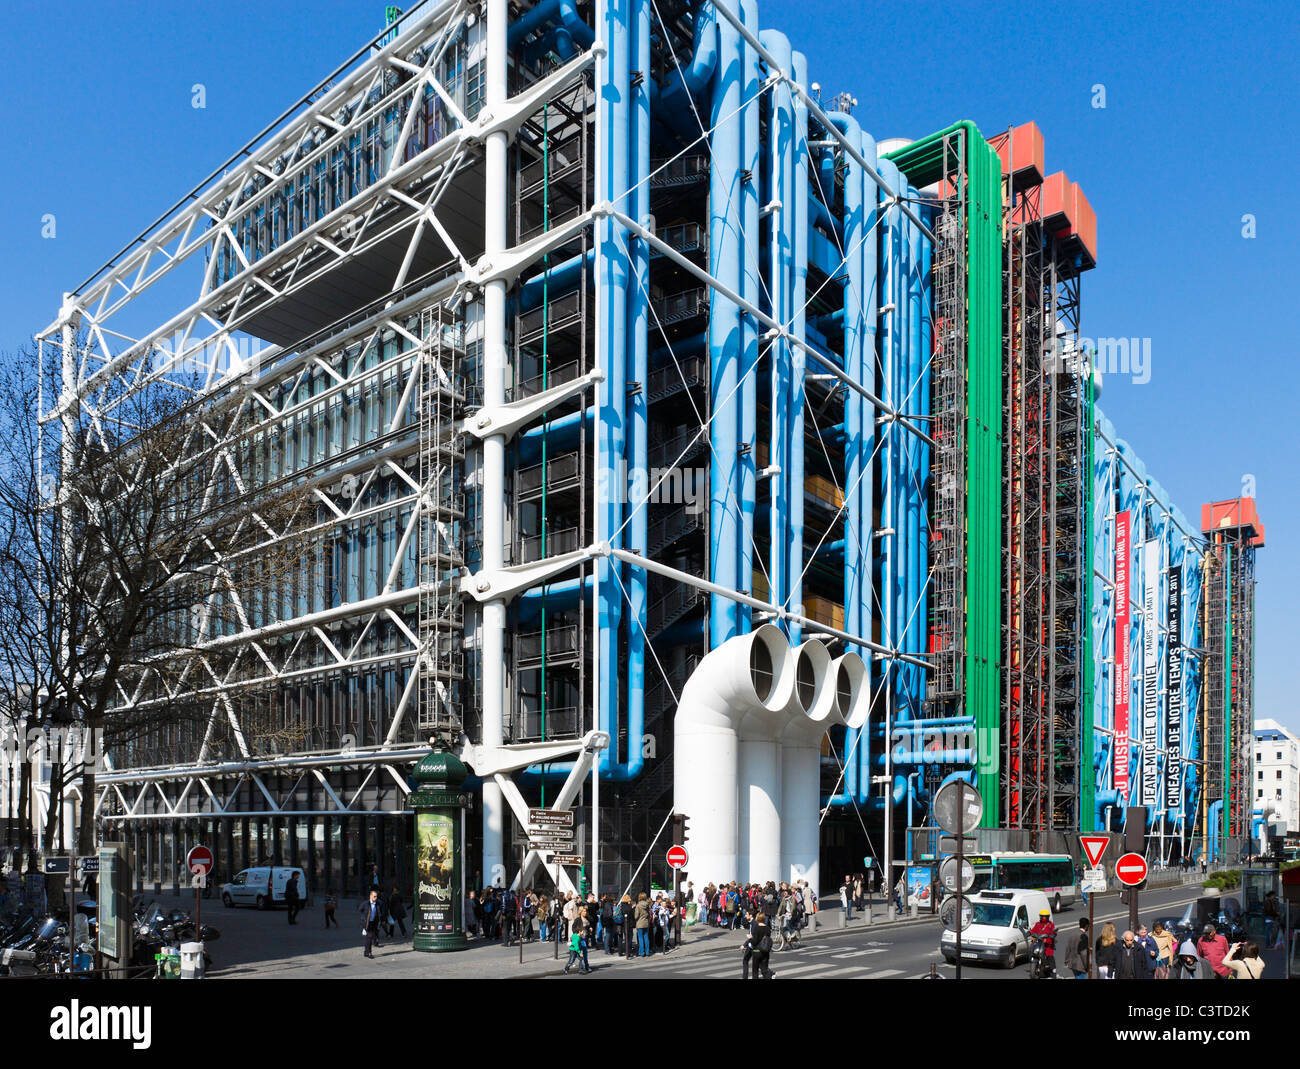 Pompidou Centre, Beaubourg district, 4th Arrondissement, Paris, France Stock Photo